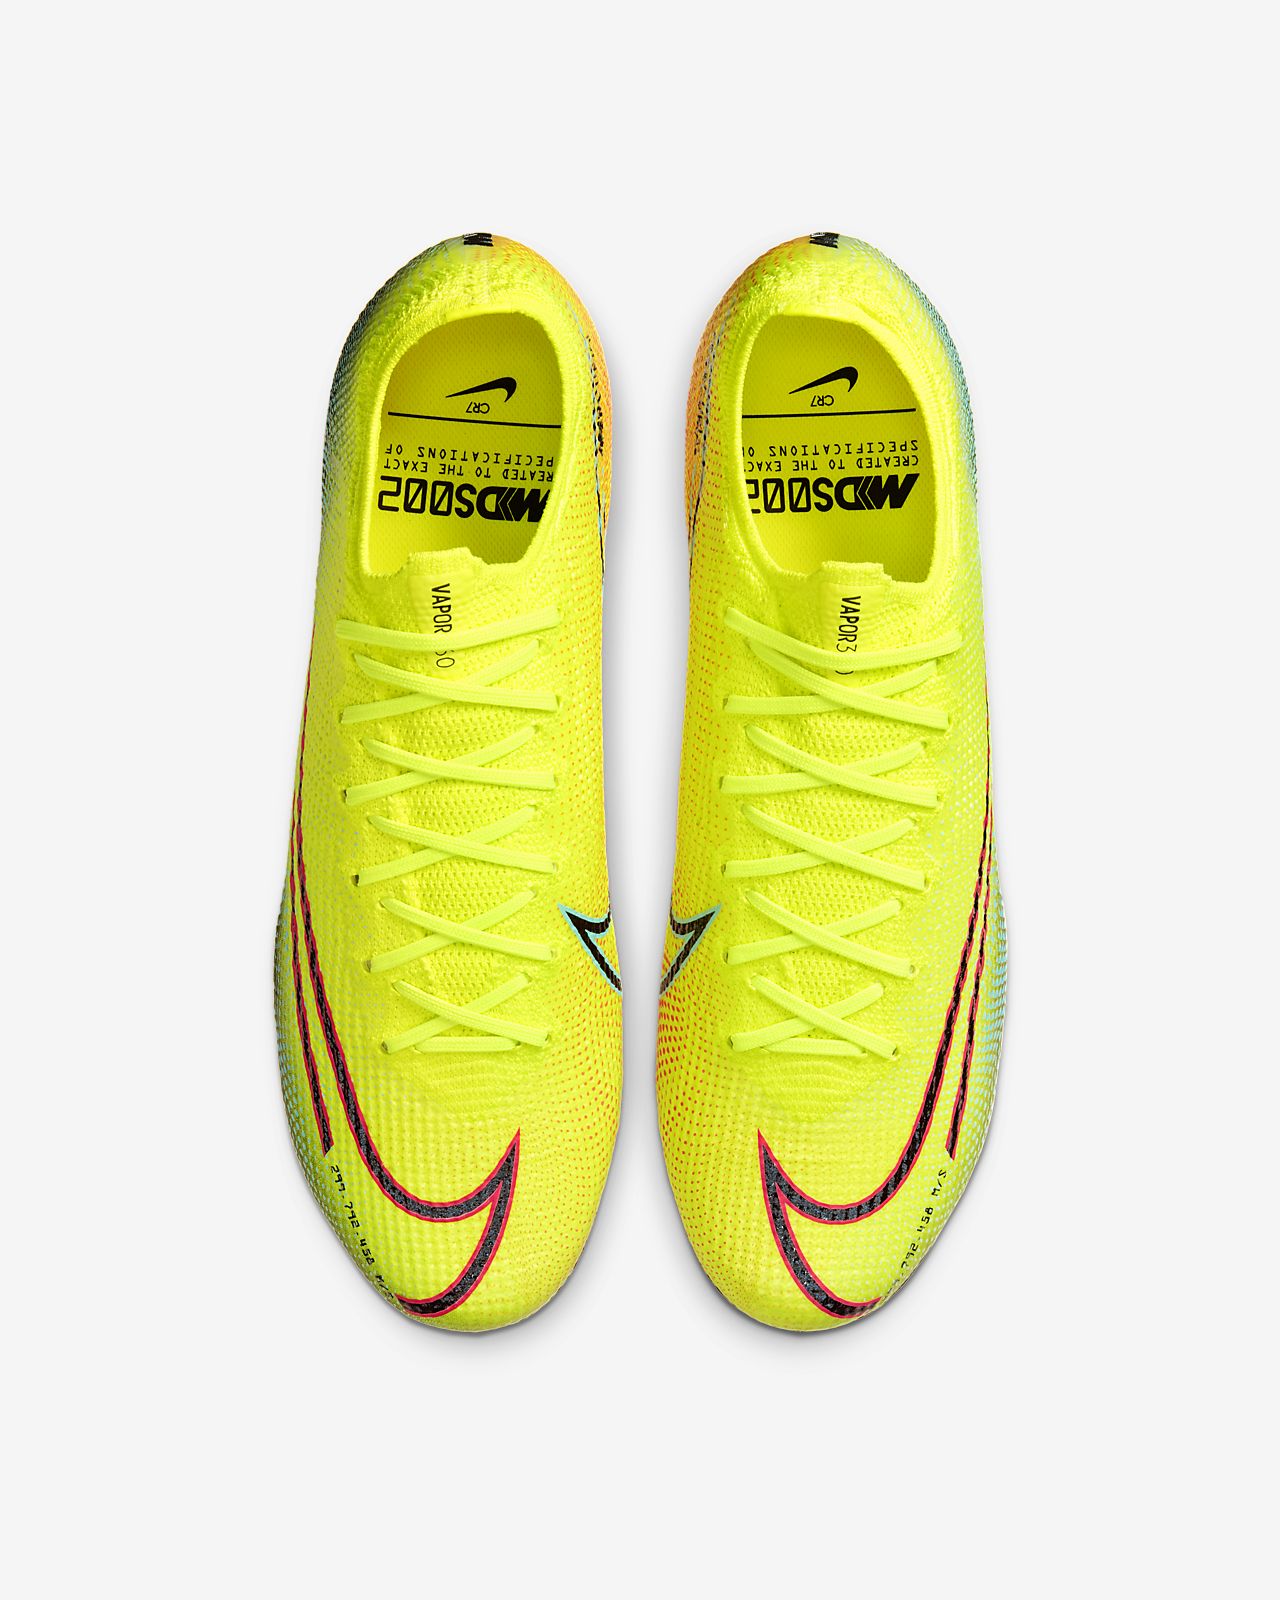 TOP 5 Dream Speed BOOTS 2019 Best lightweight football boots .